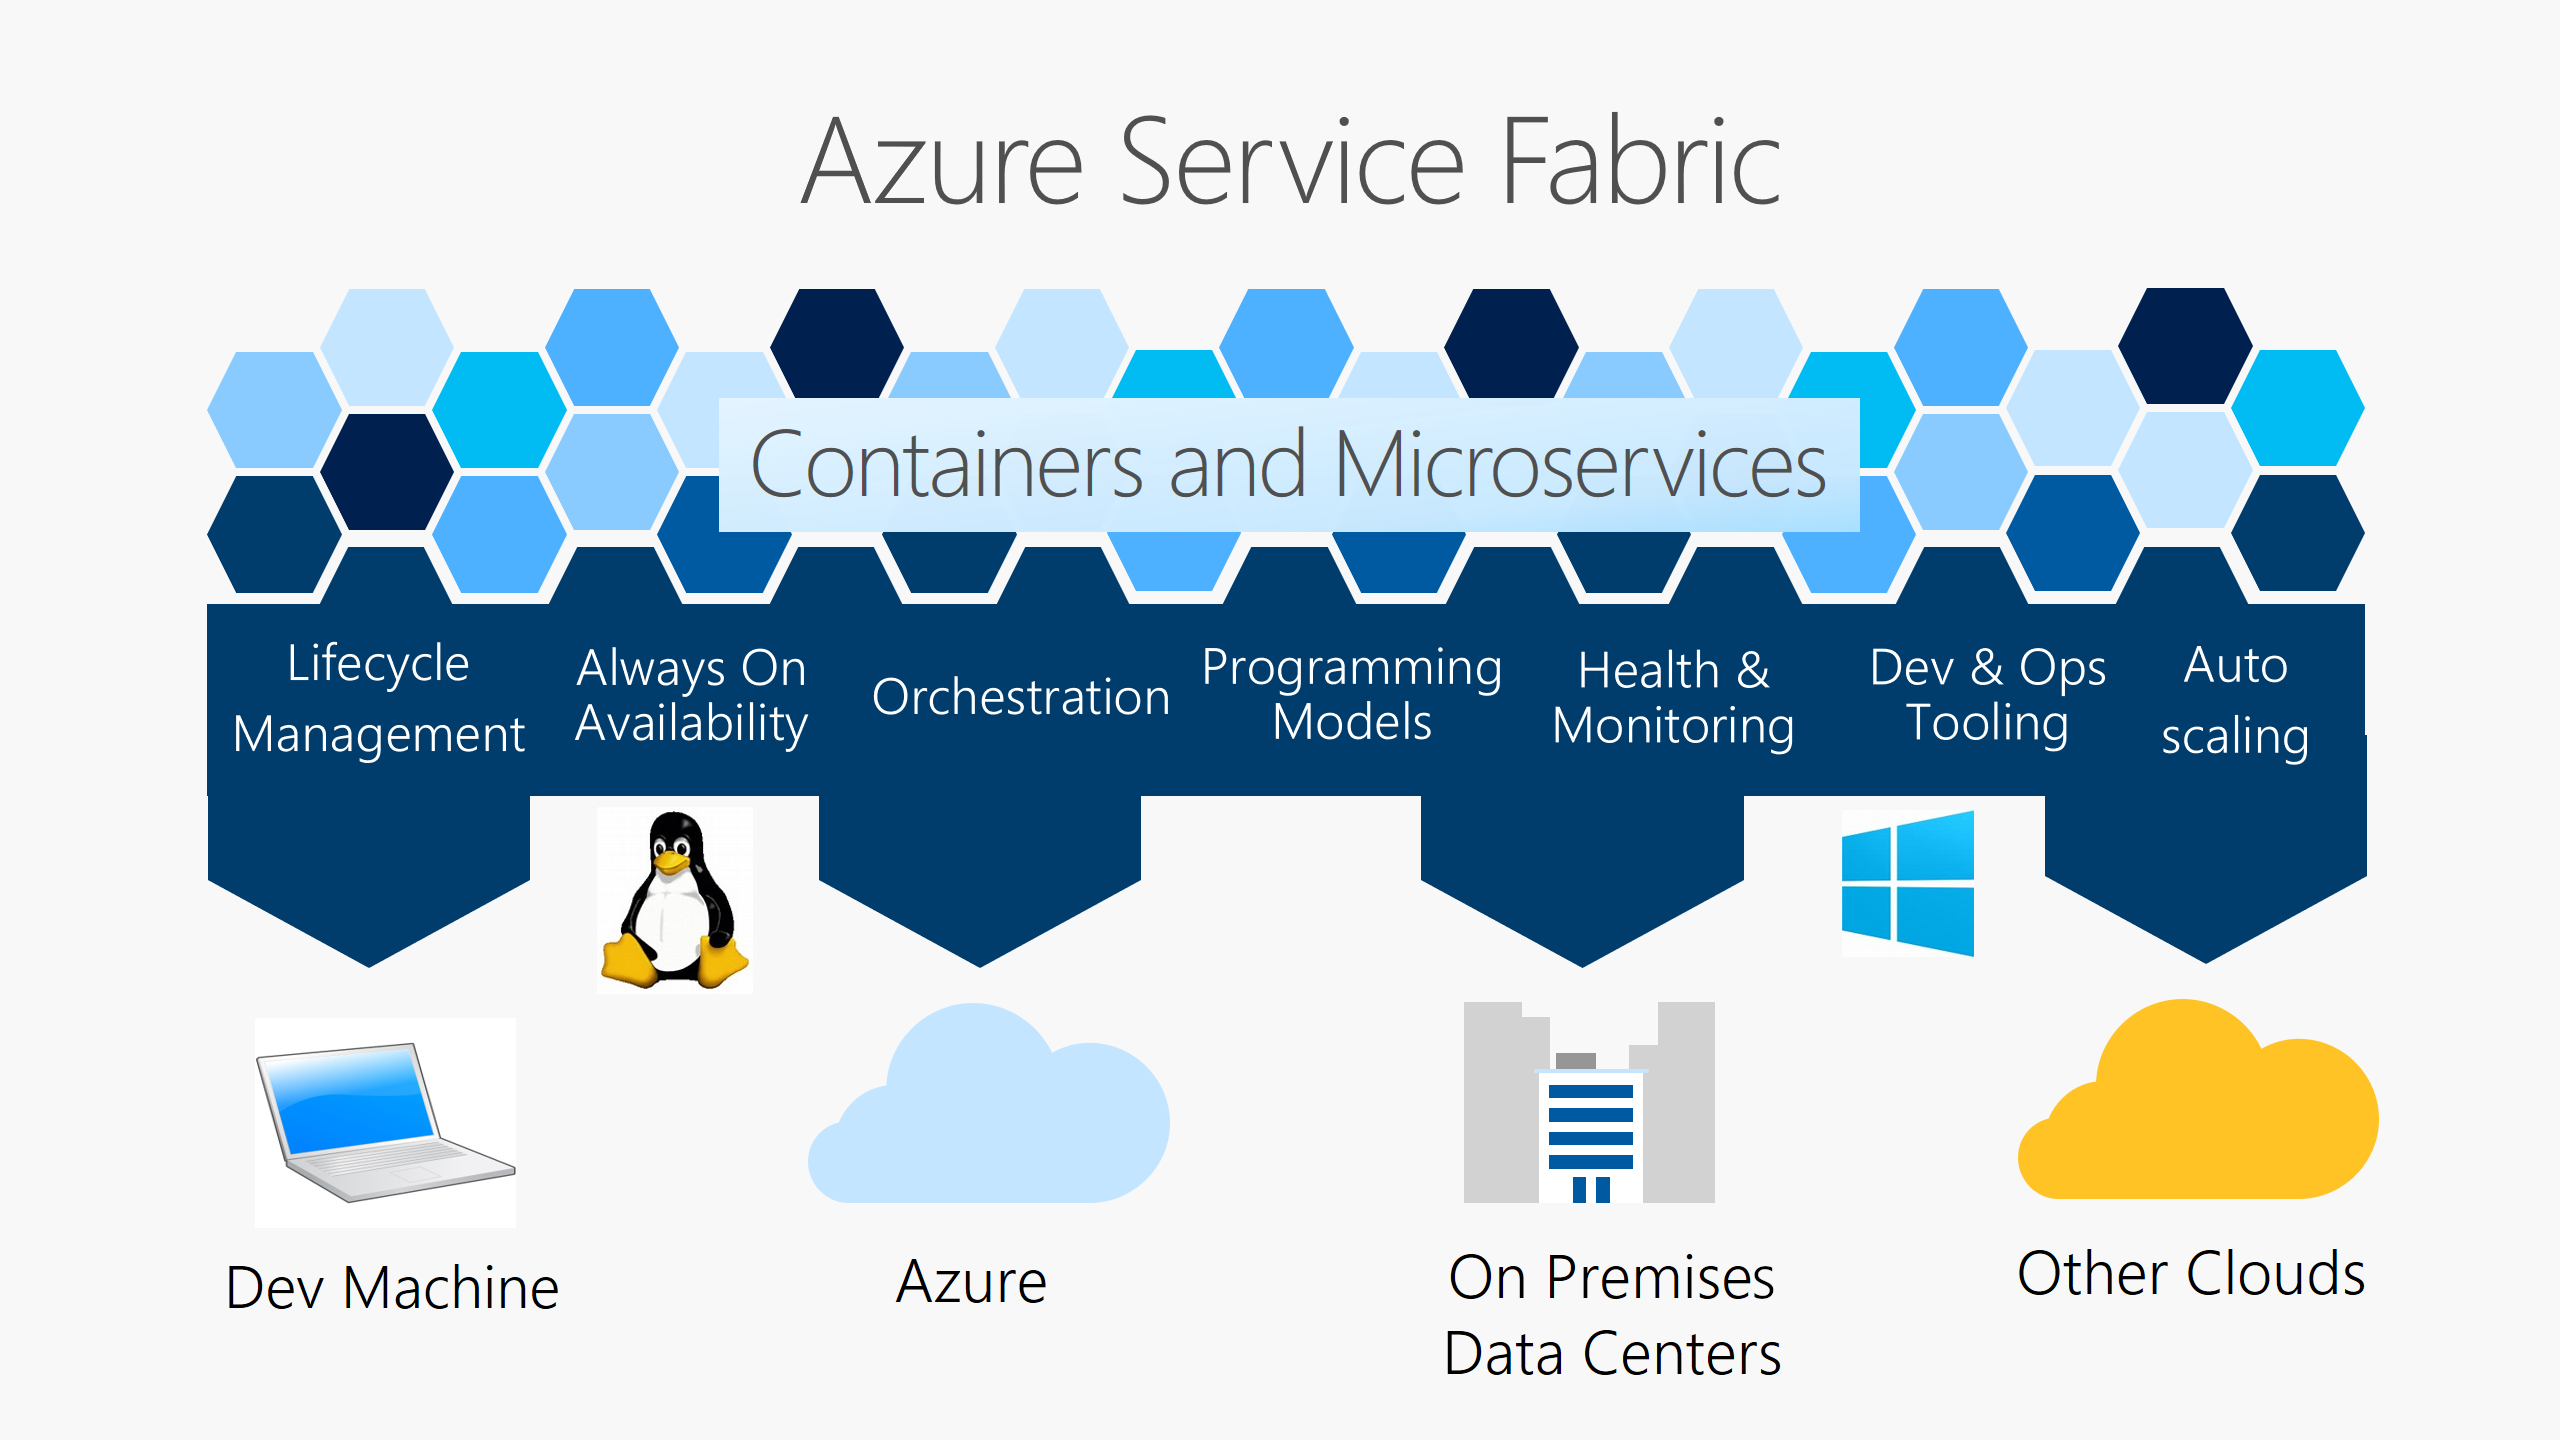 La plataforma Service Fabric proporciona administración del ciclo de vida, disponibilidad, orquestación, modelos de programación, mantenimiento y supervisión, herramientas de desarrollo y operaciones, y escalabilidad automática (en Azure, en entornos locales, en otras nubes y en la máquina de desarrollo).